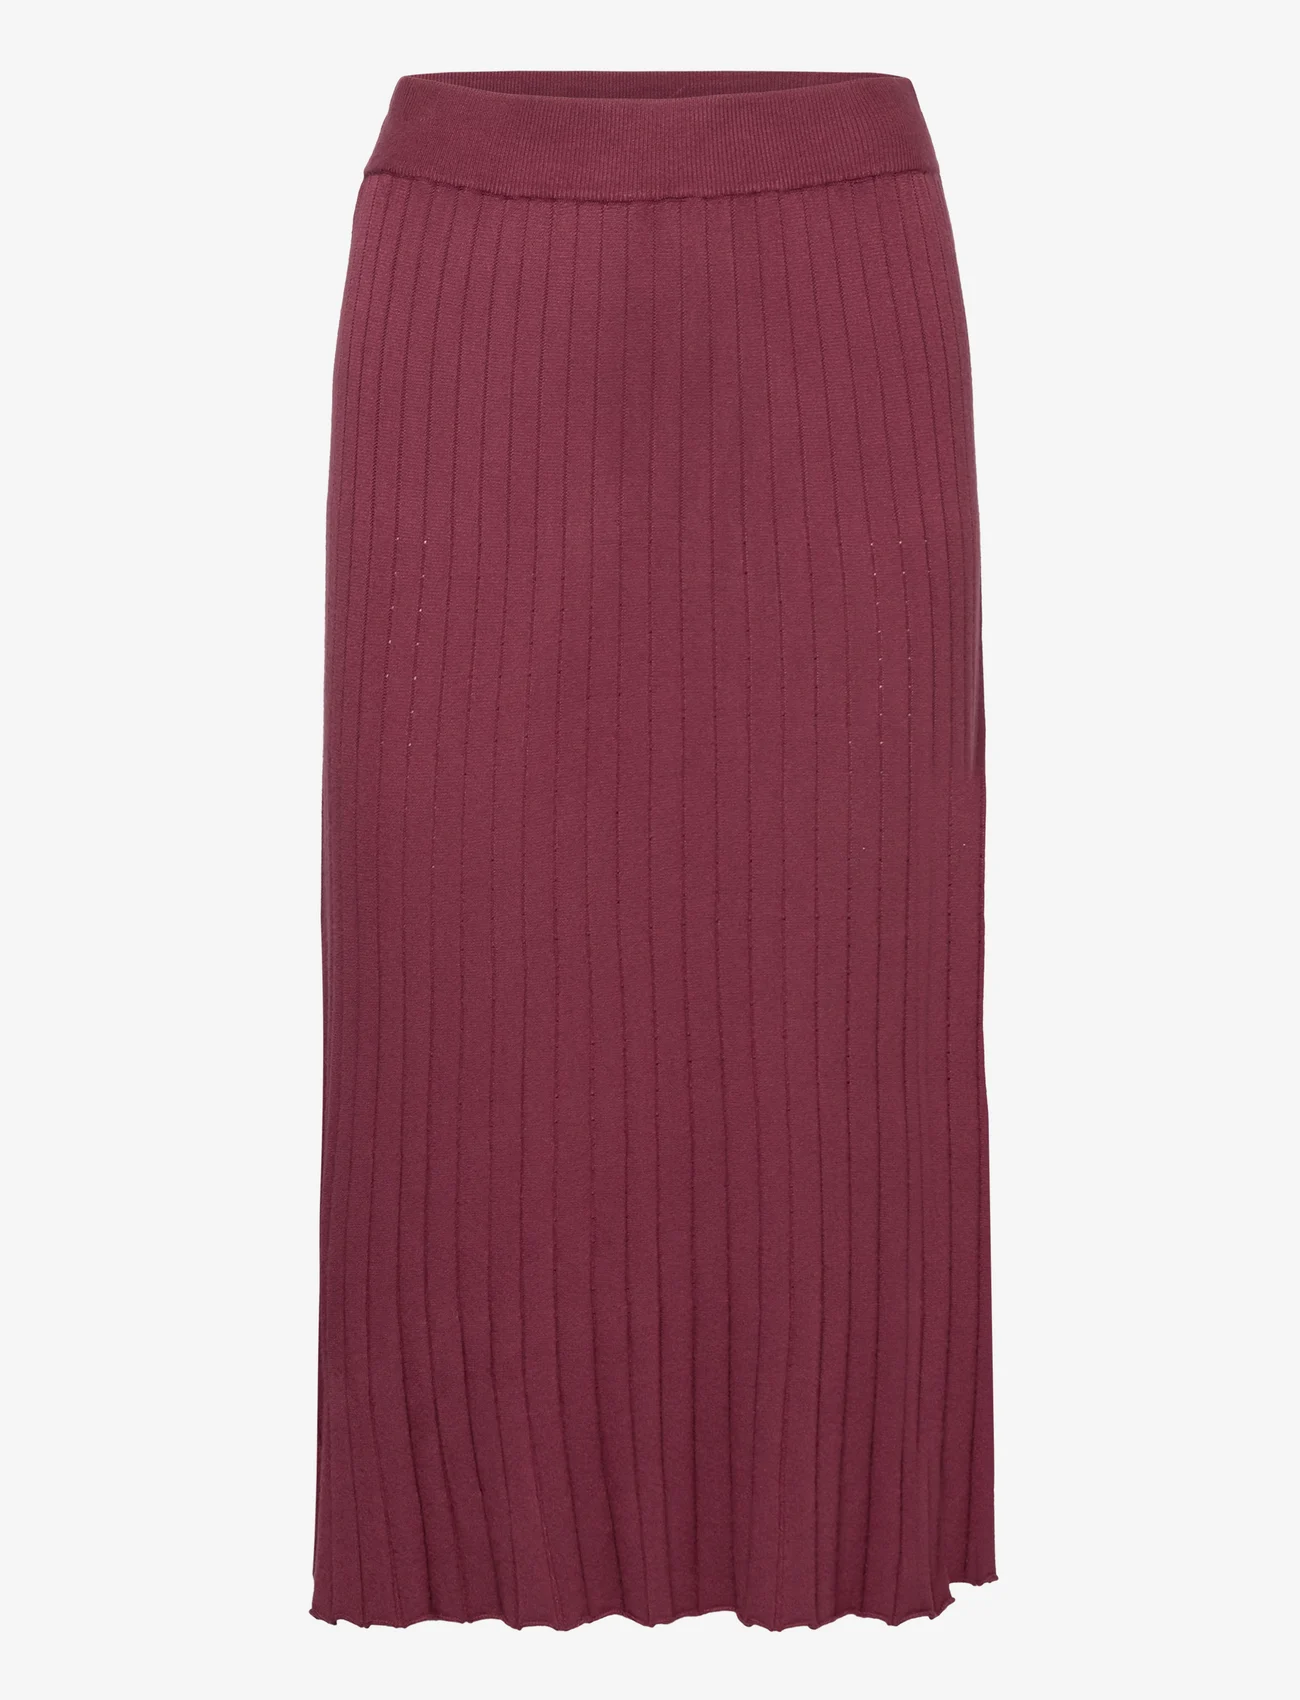 Noa Noa - VibeNN Skirt - strikkede nederdele - tawny port - 0